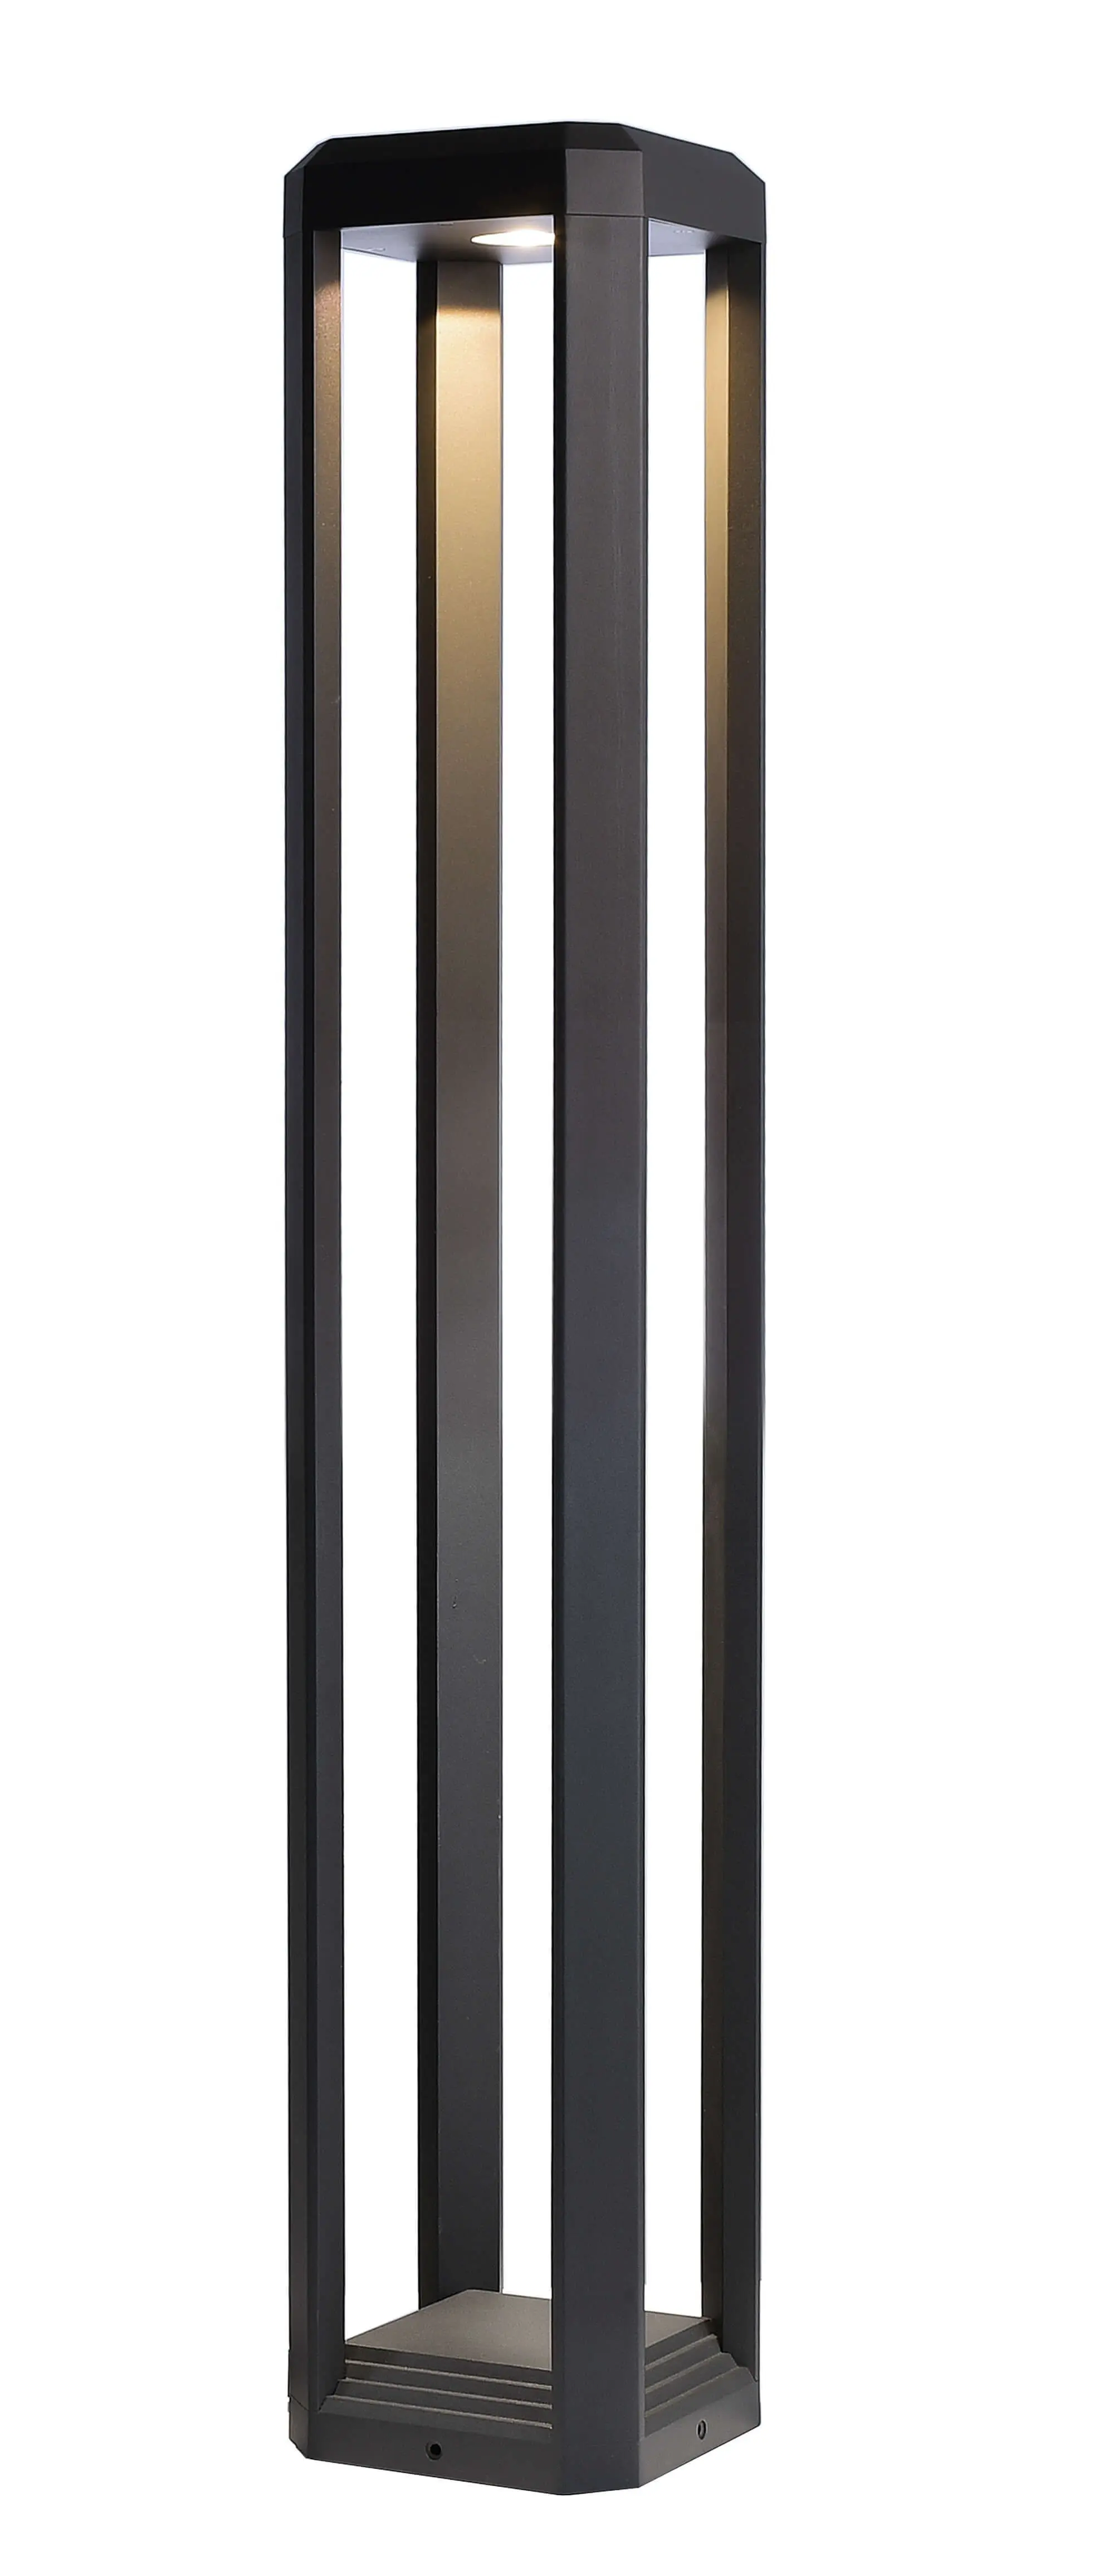 LED-Wegeleuchte Rukbat exquisite in grau, 80cm